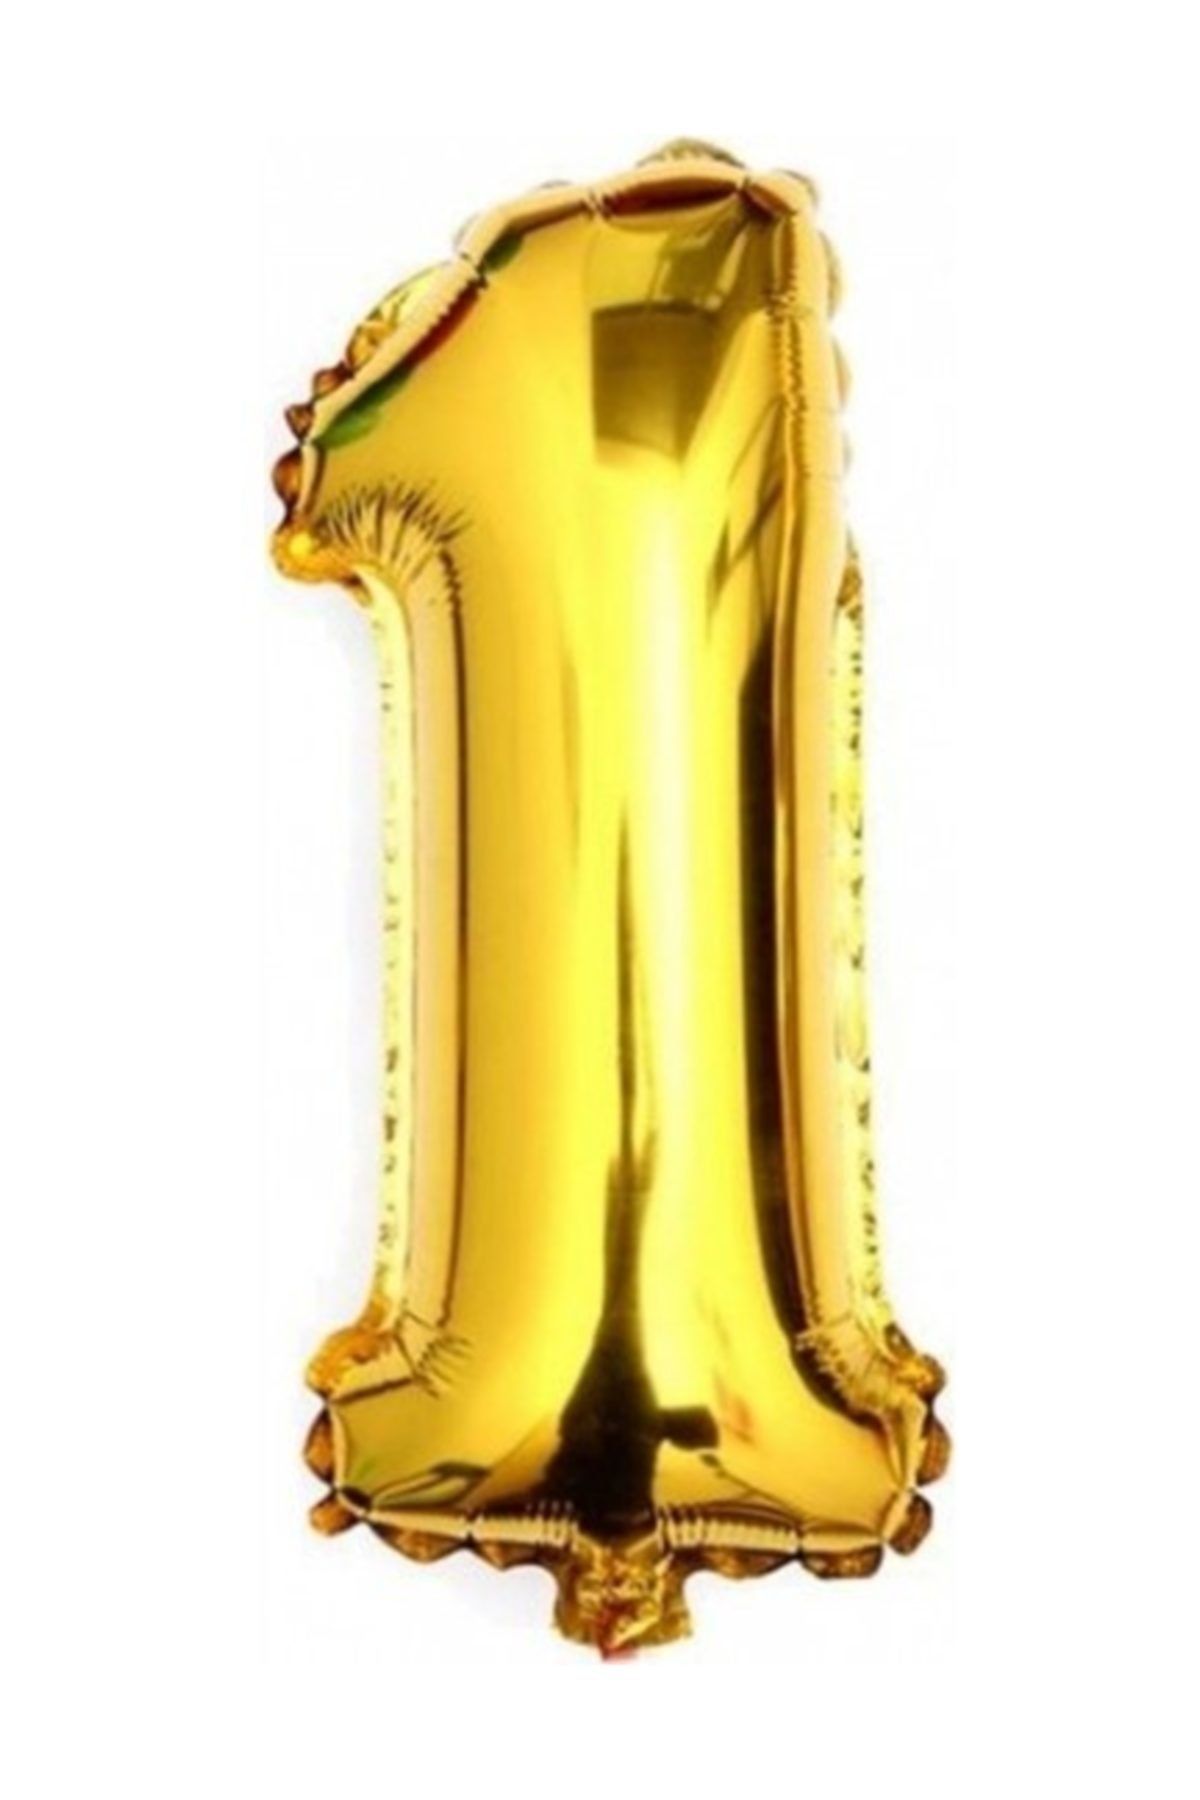 Cansüs Folyo Balon 1 Rakamı Altın (gold) Rengi 40 Inc 100 Cm